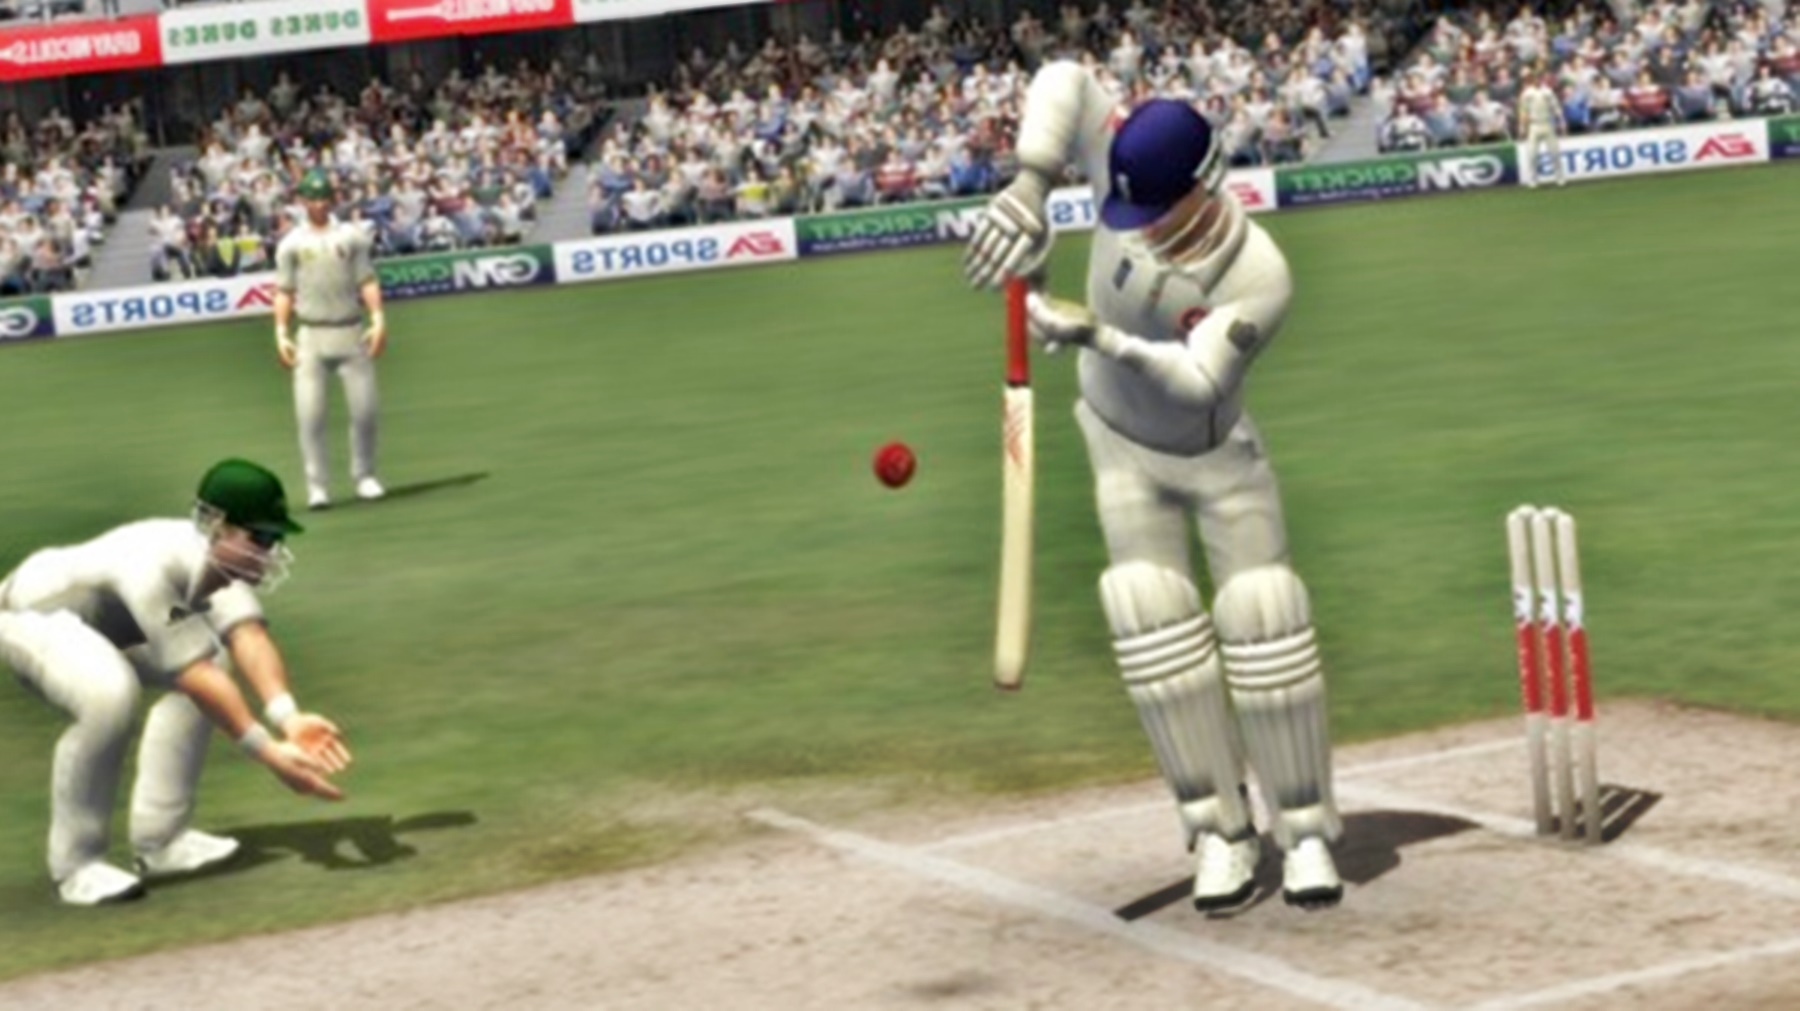 ea cricket 2013 download